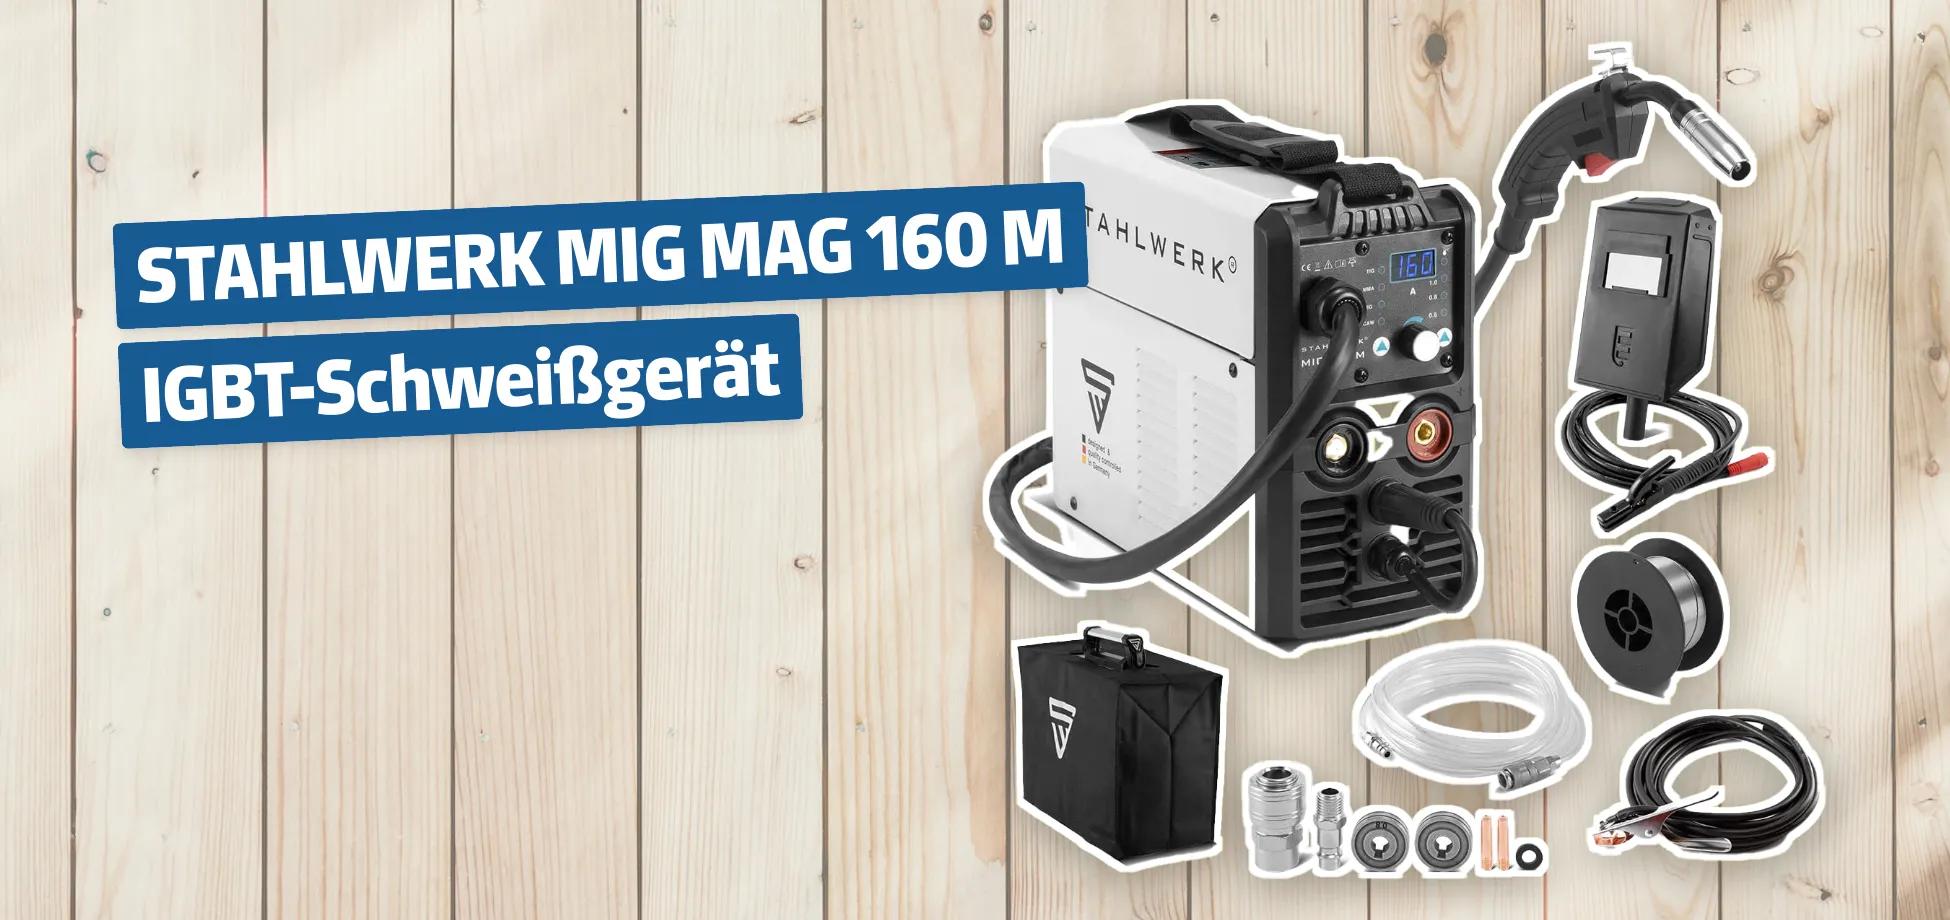 STAHLWERK MIG MAG 160 M IGBT-Schweißgerät